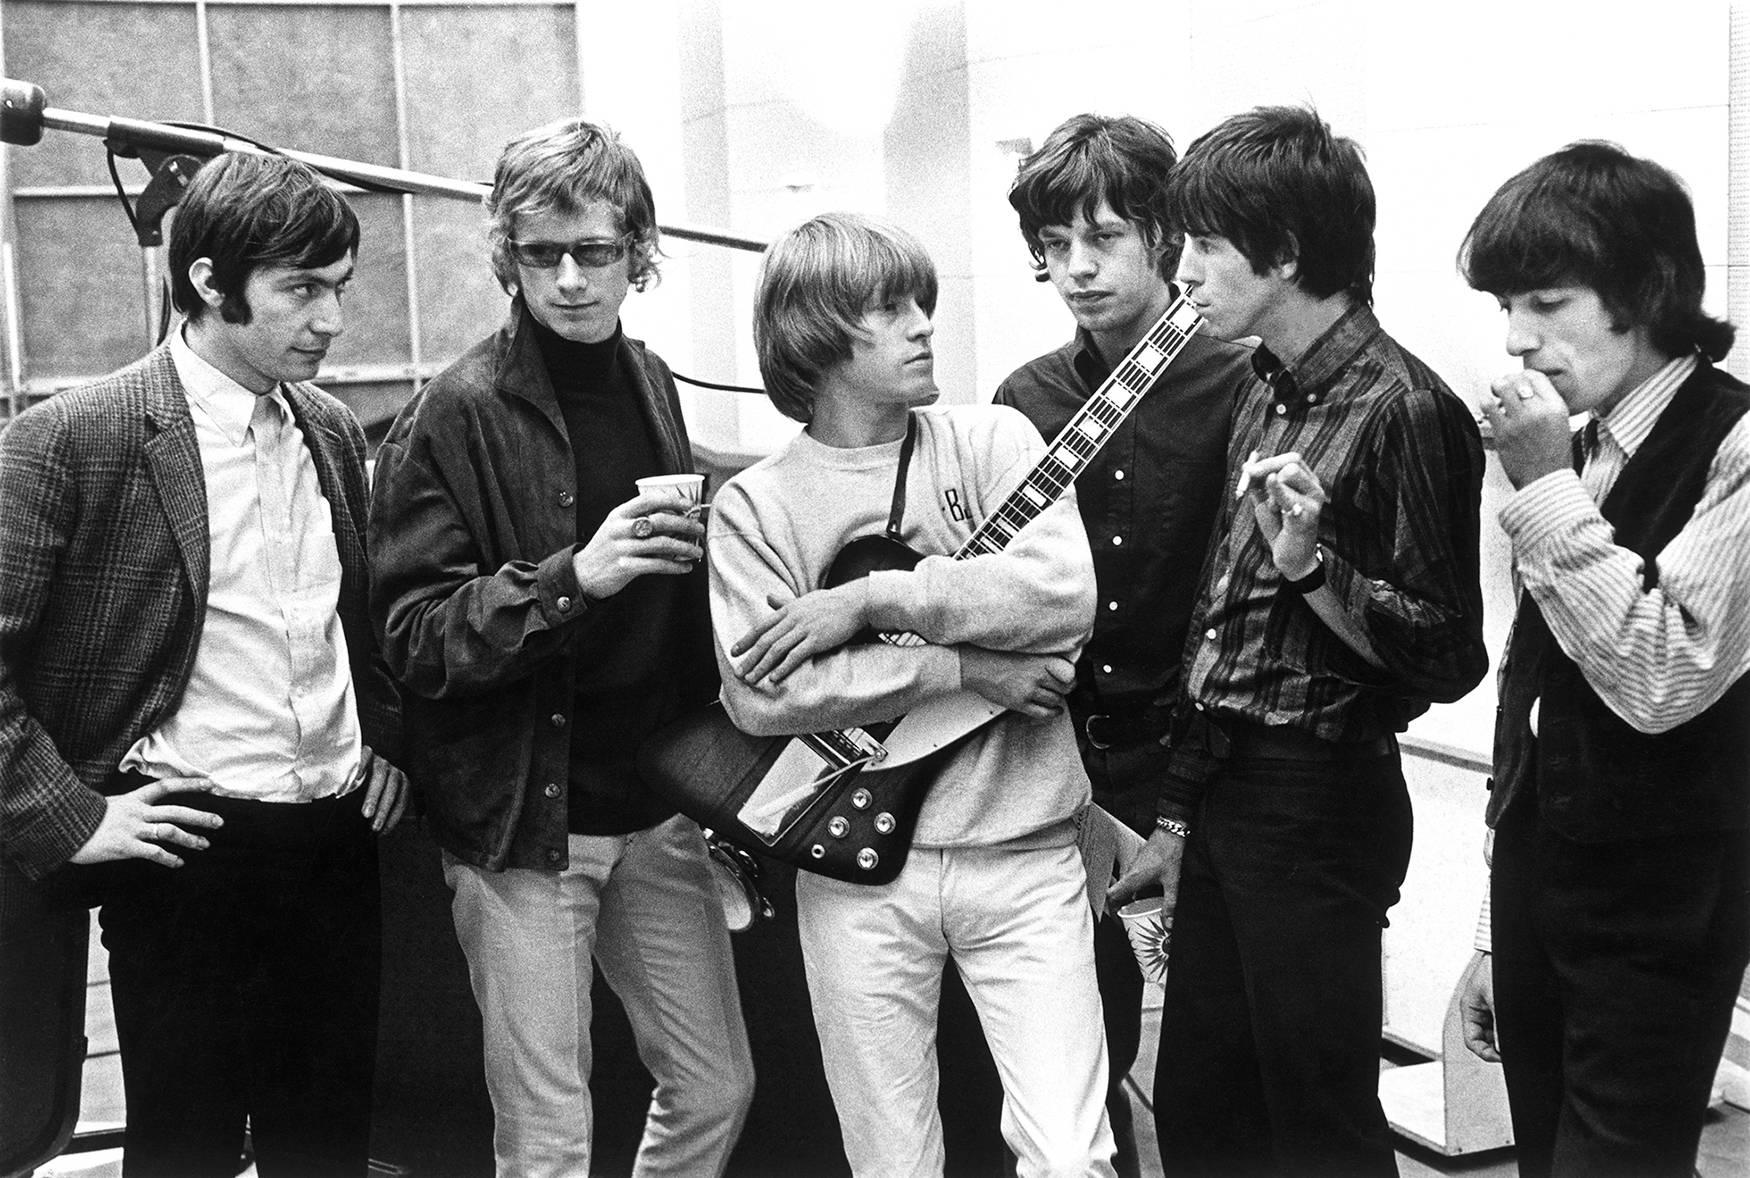 Die Rolling Stones, 1965, TIME

Silber-Gelatine-Druck
Auflagenhöhe: 15

Erhältlich in den folgenden Größen:
16 x 20 Zoll - $7.200
20 x 24 Zoll
30 x 40 Zoll
40 x 60 Zoll

Künstler Bio:

Julian Wasser begann seine Karriere im Alter von 14 Jahren als